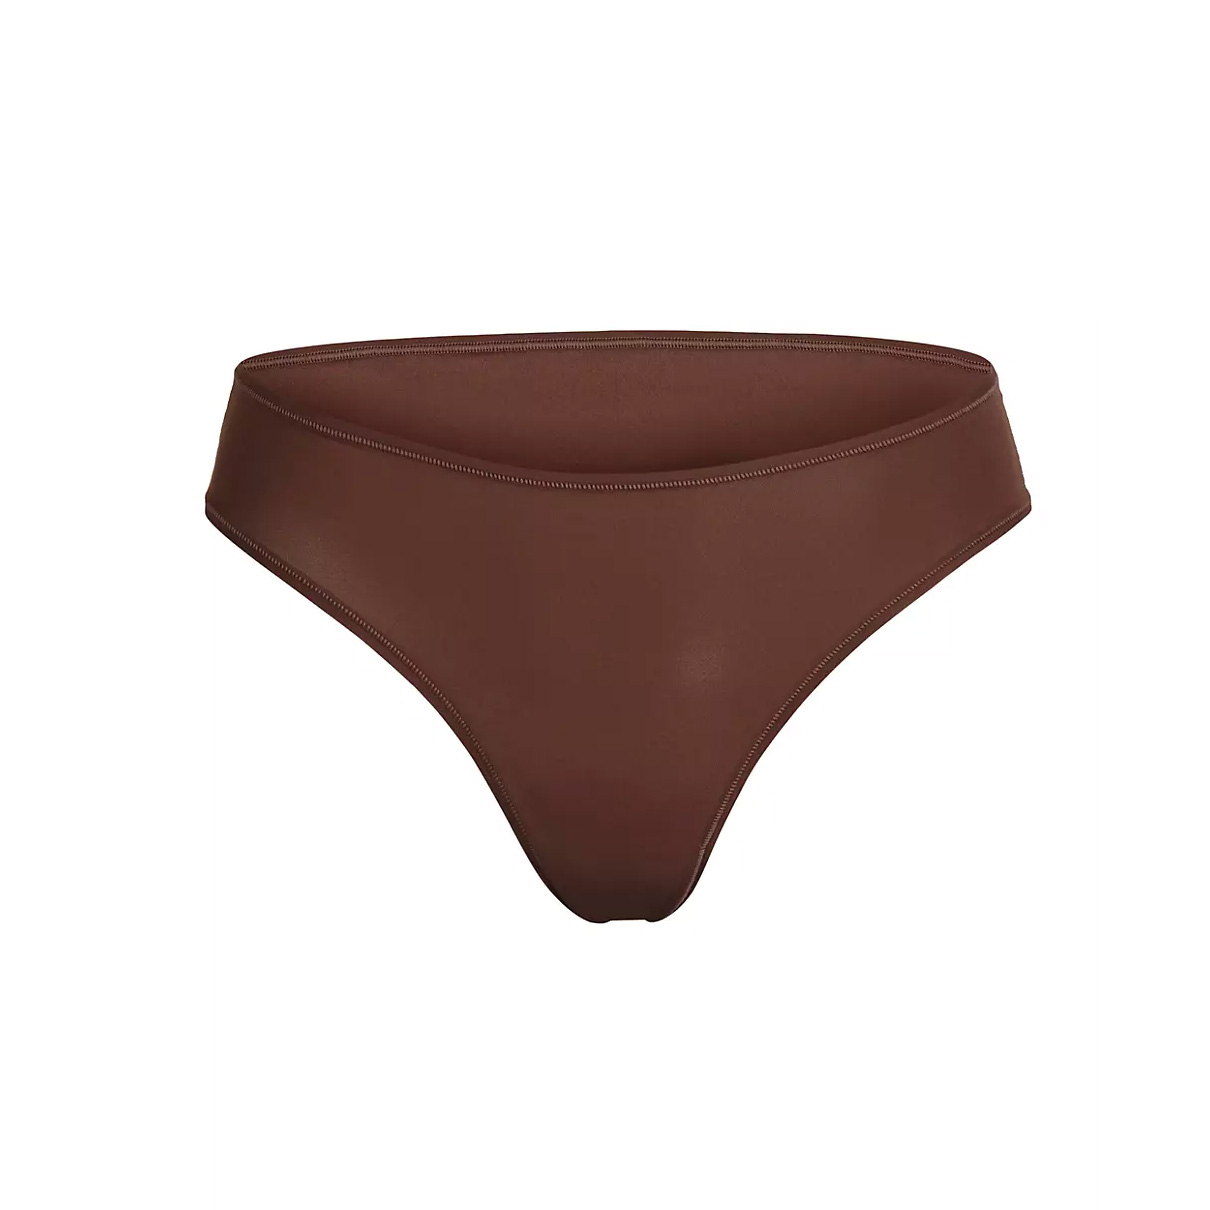 Dark brown underwear